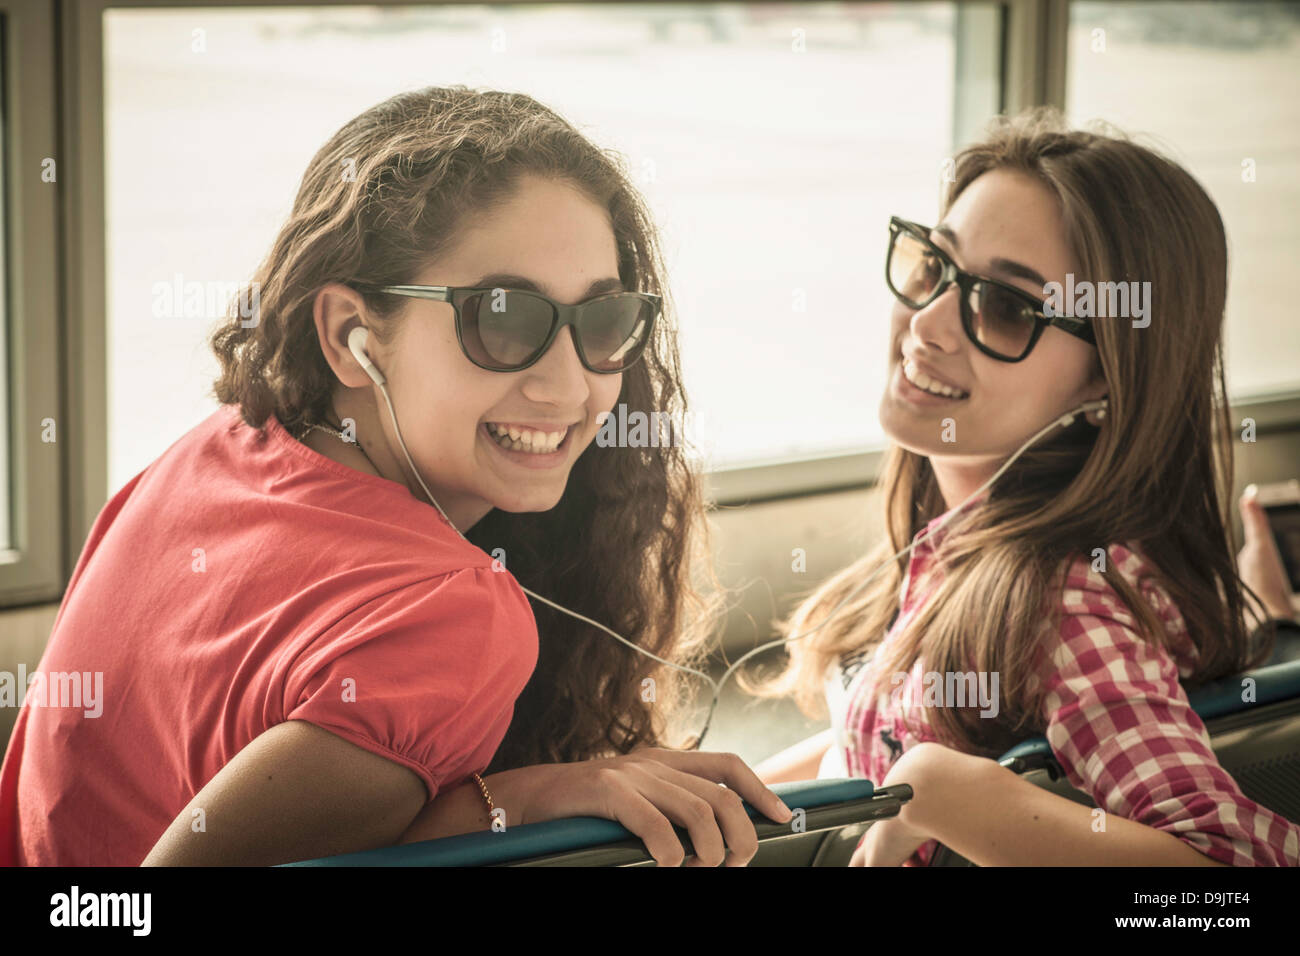 Zwei Mädchen im Teenageralter mit Sonnenbrille, Musik hören Stockfoto